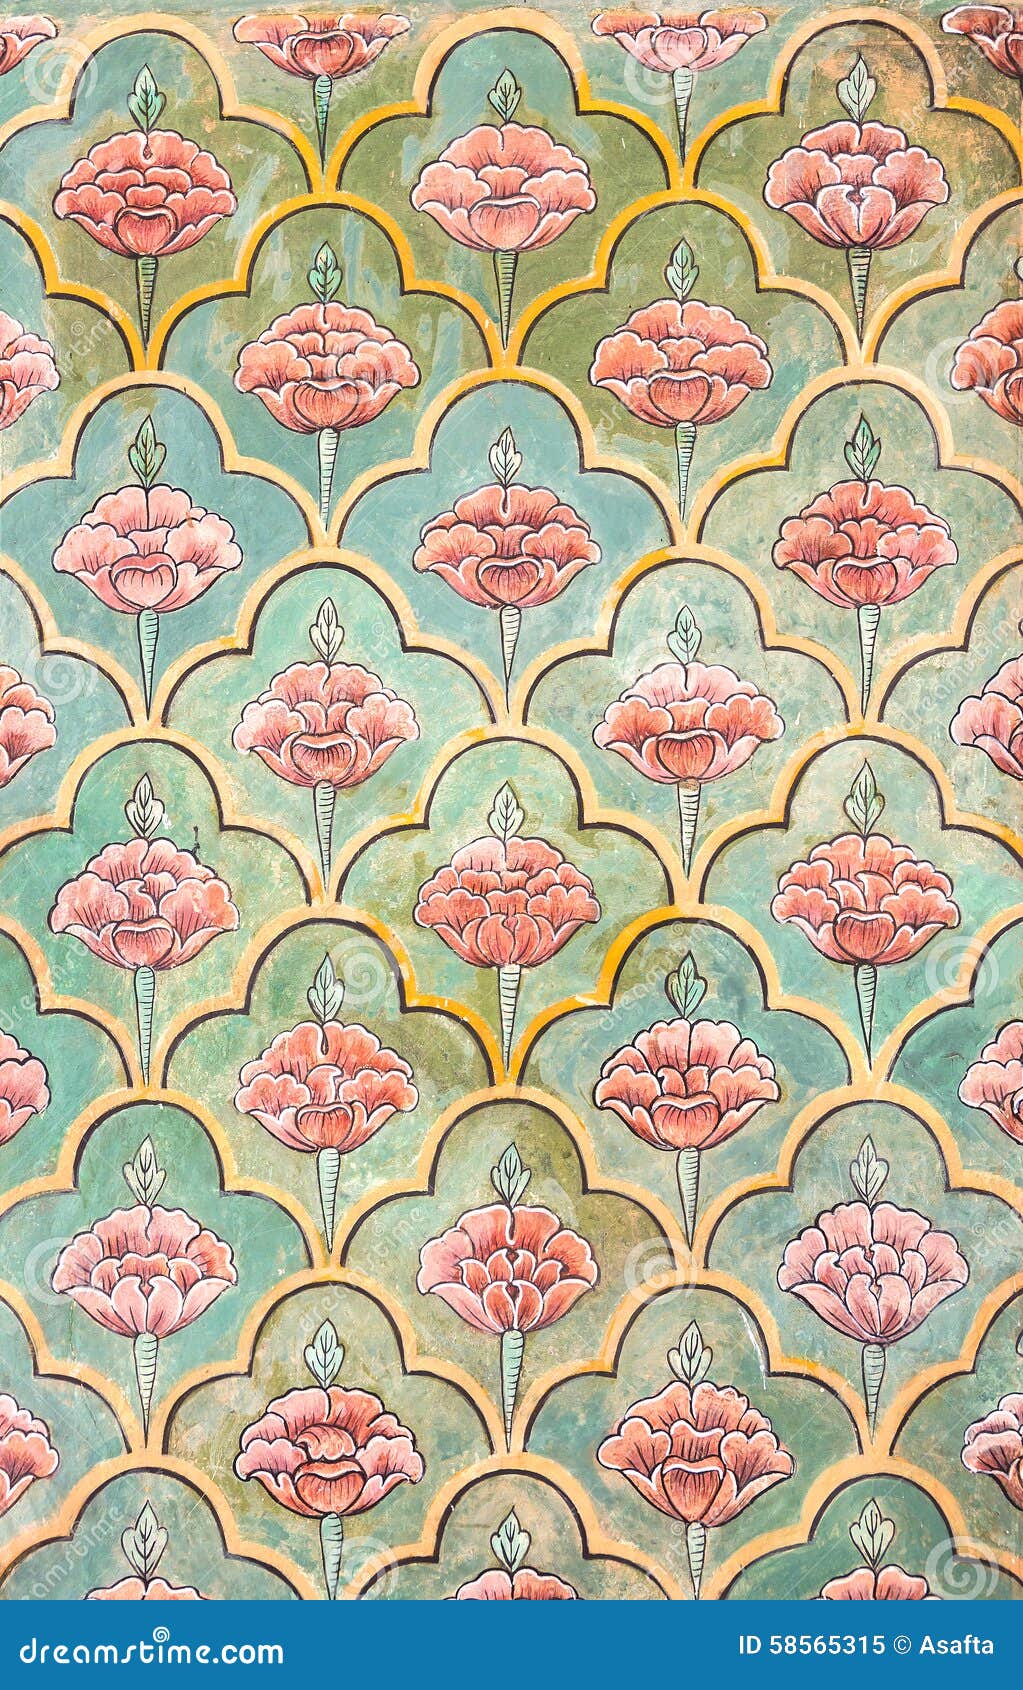 mughal wall paintings at jaipur city palace